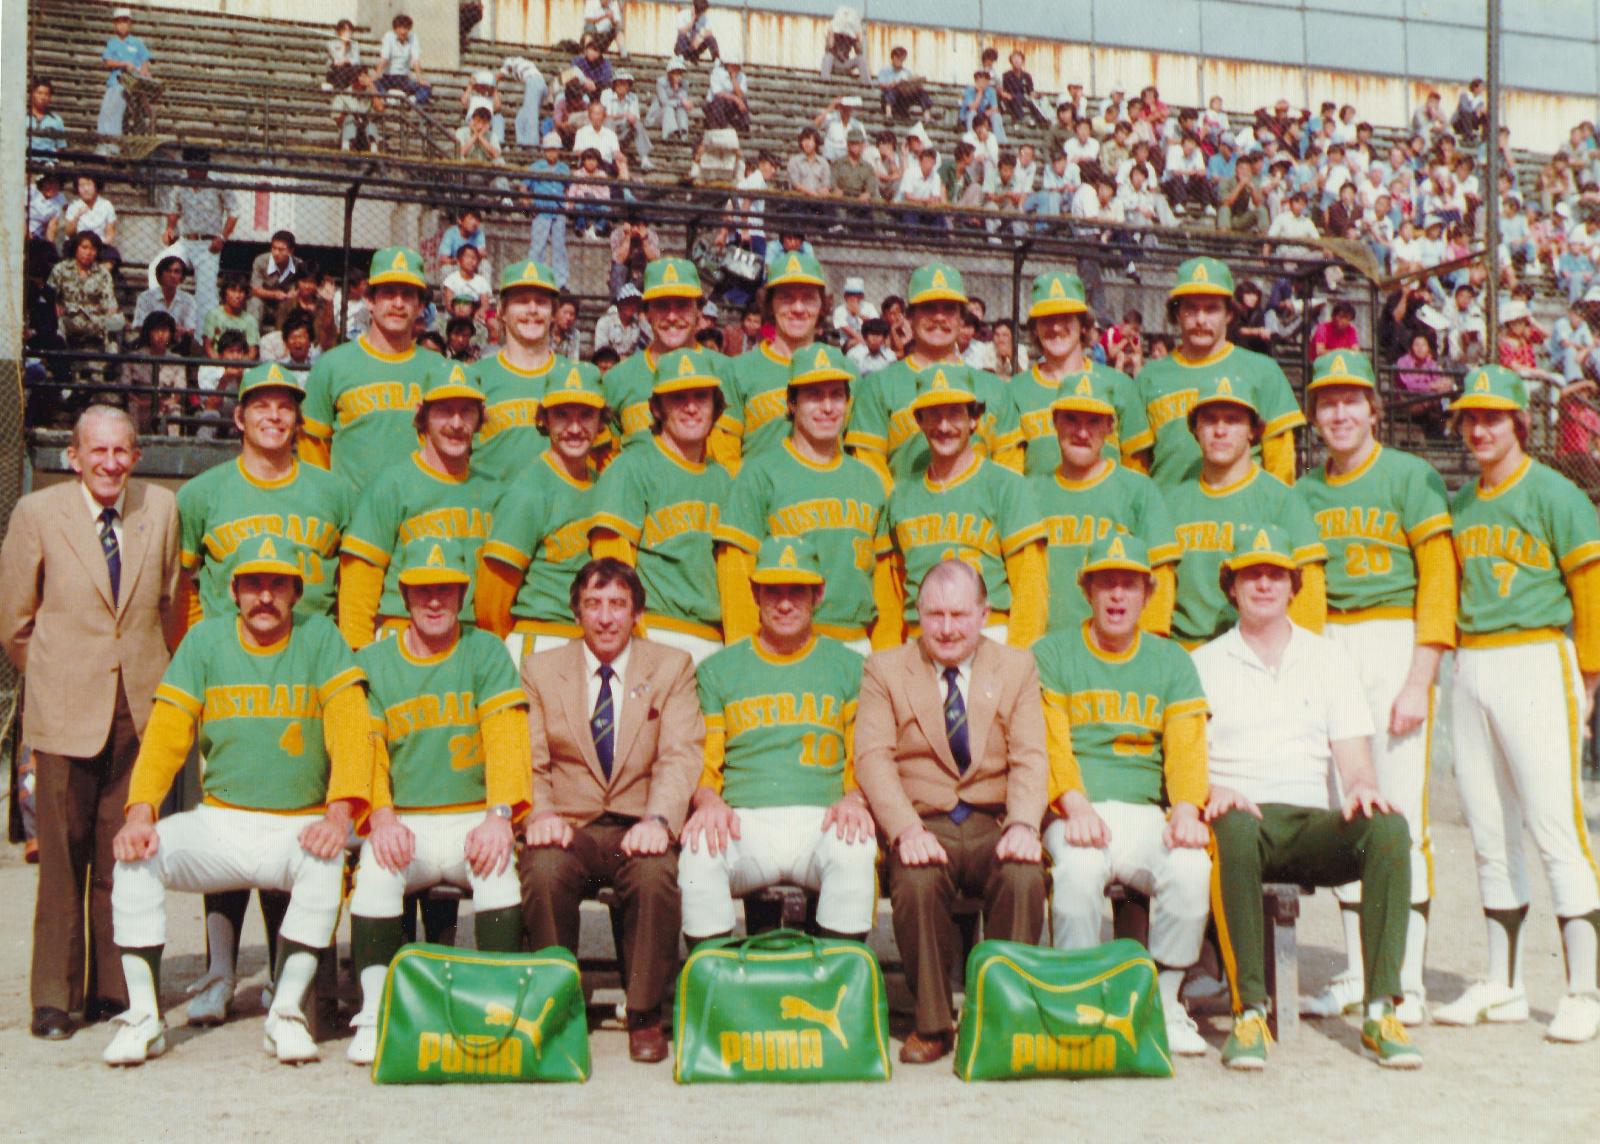 1979 Australian Baseball Team - Goodwill Tour in Korea 